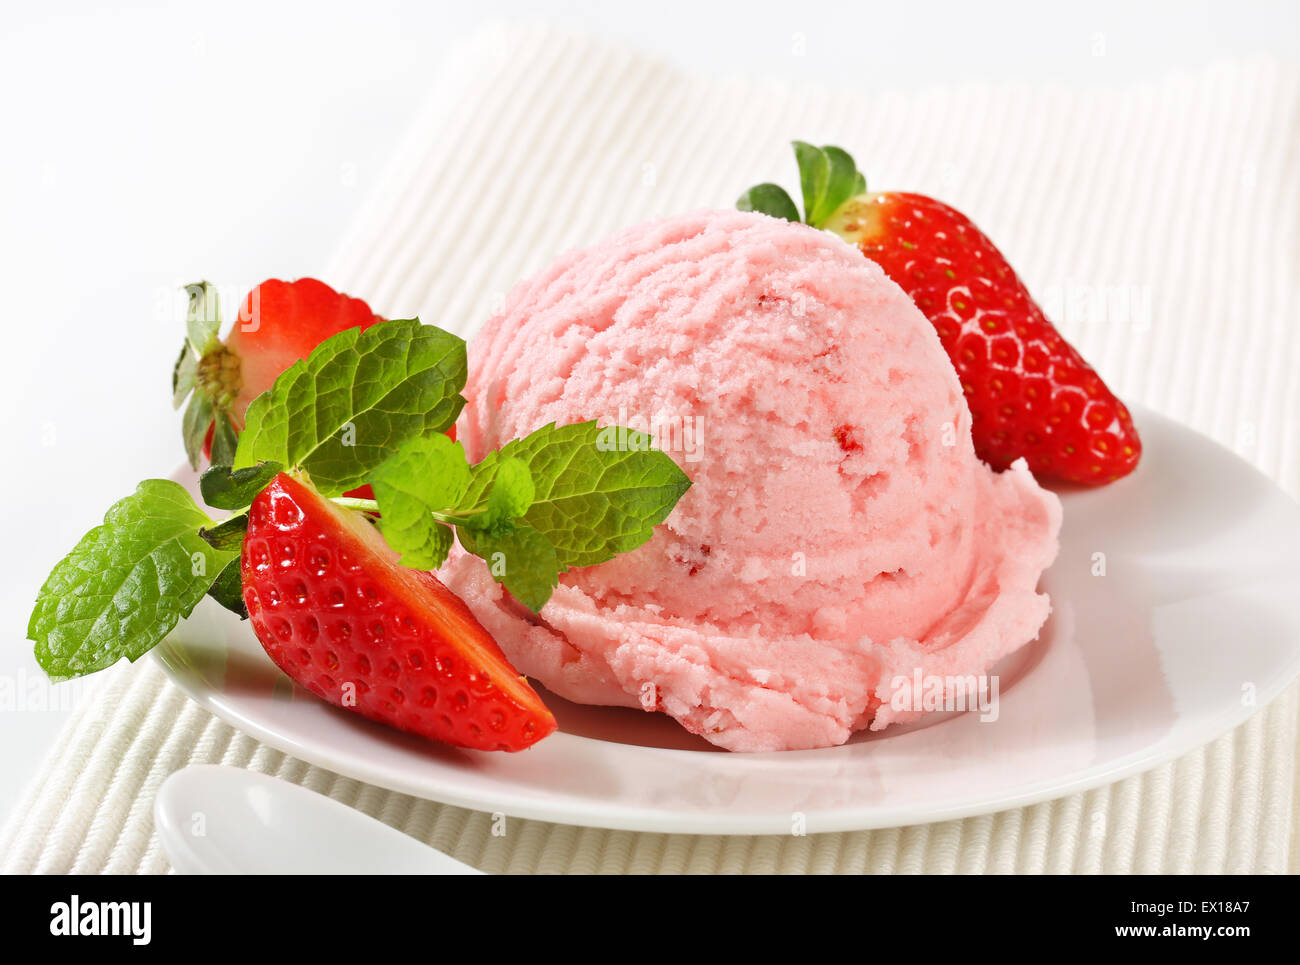 Scoop of ice cream with fresh strawberries Stock Photo